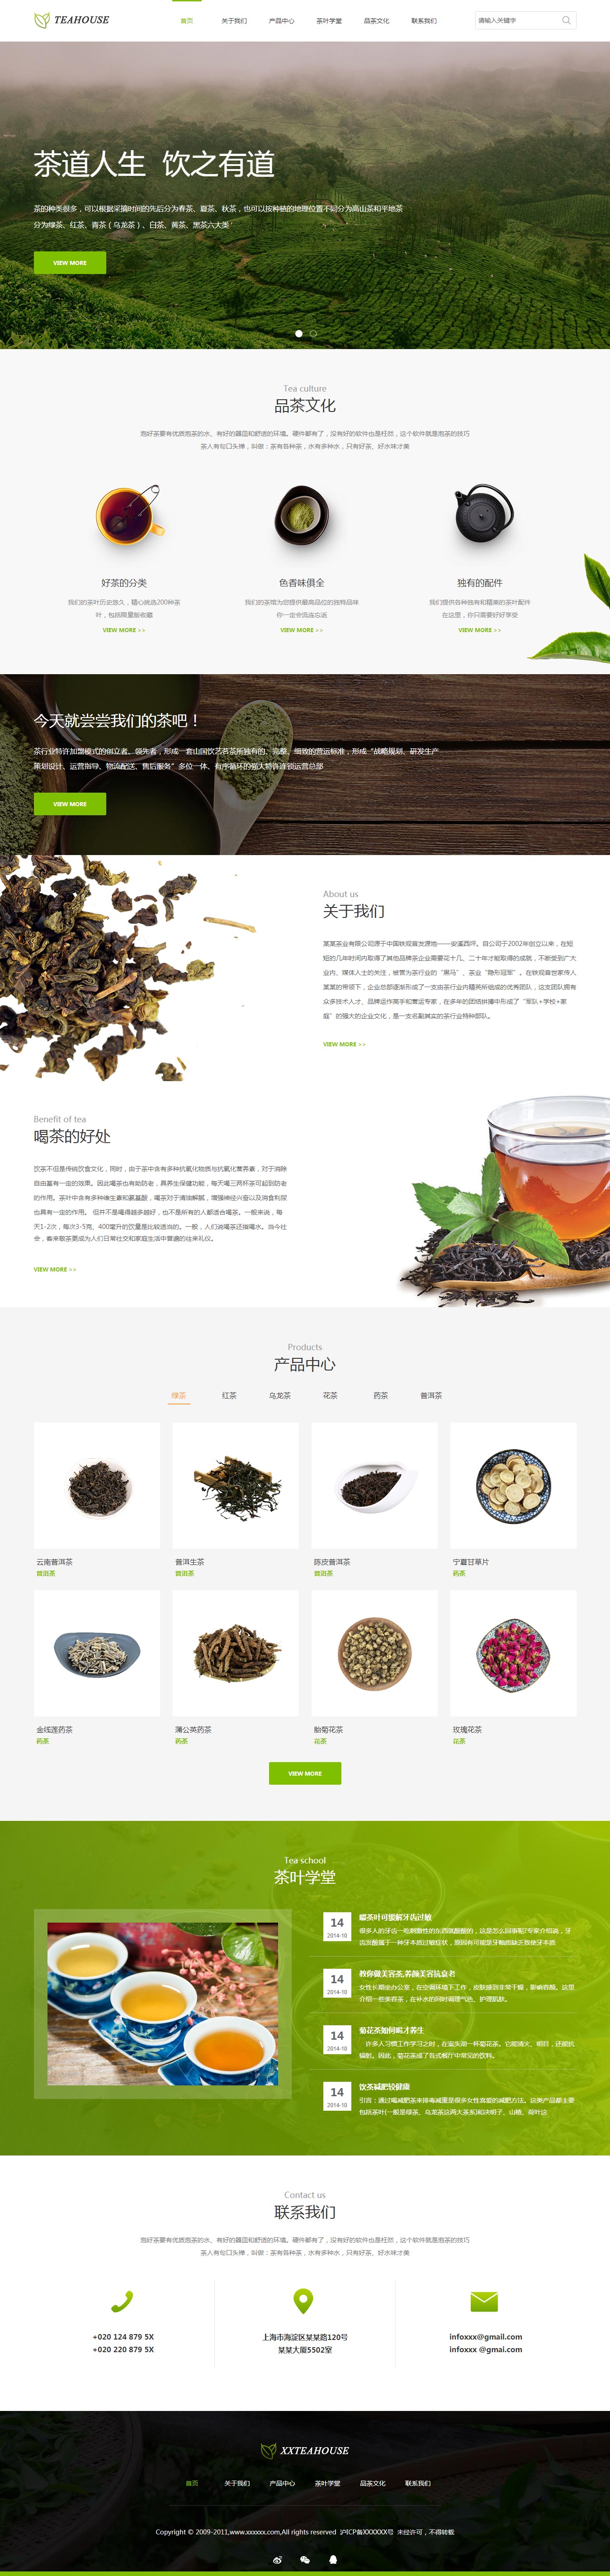 茶叶网站模板-tea-1139186